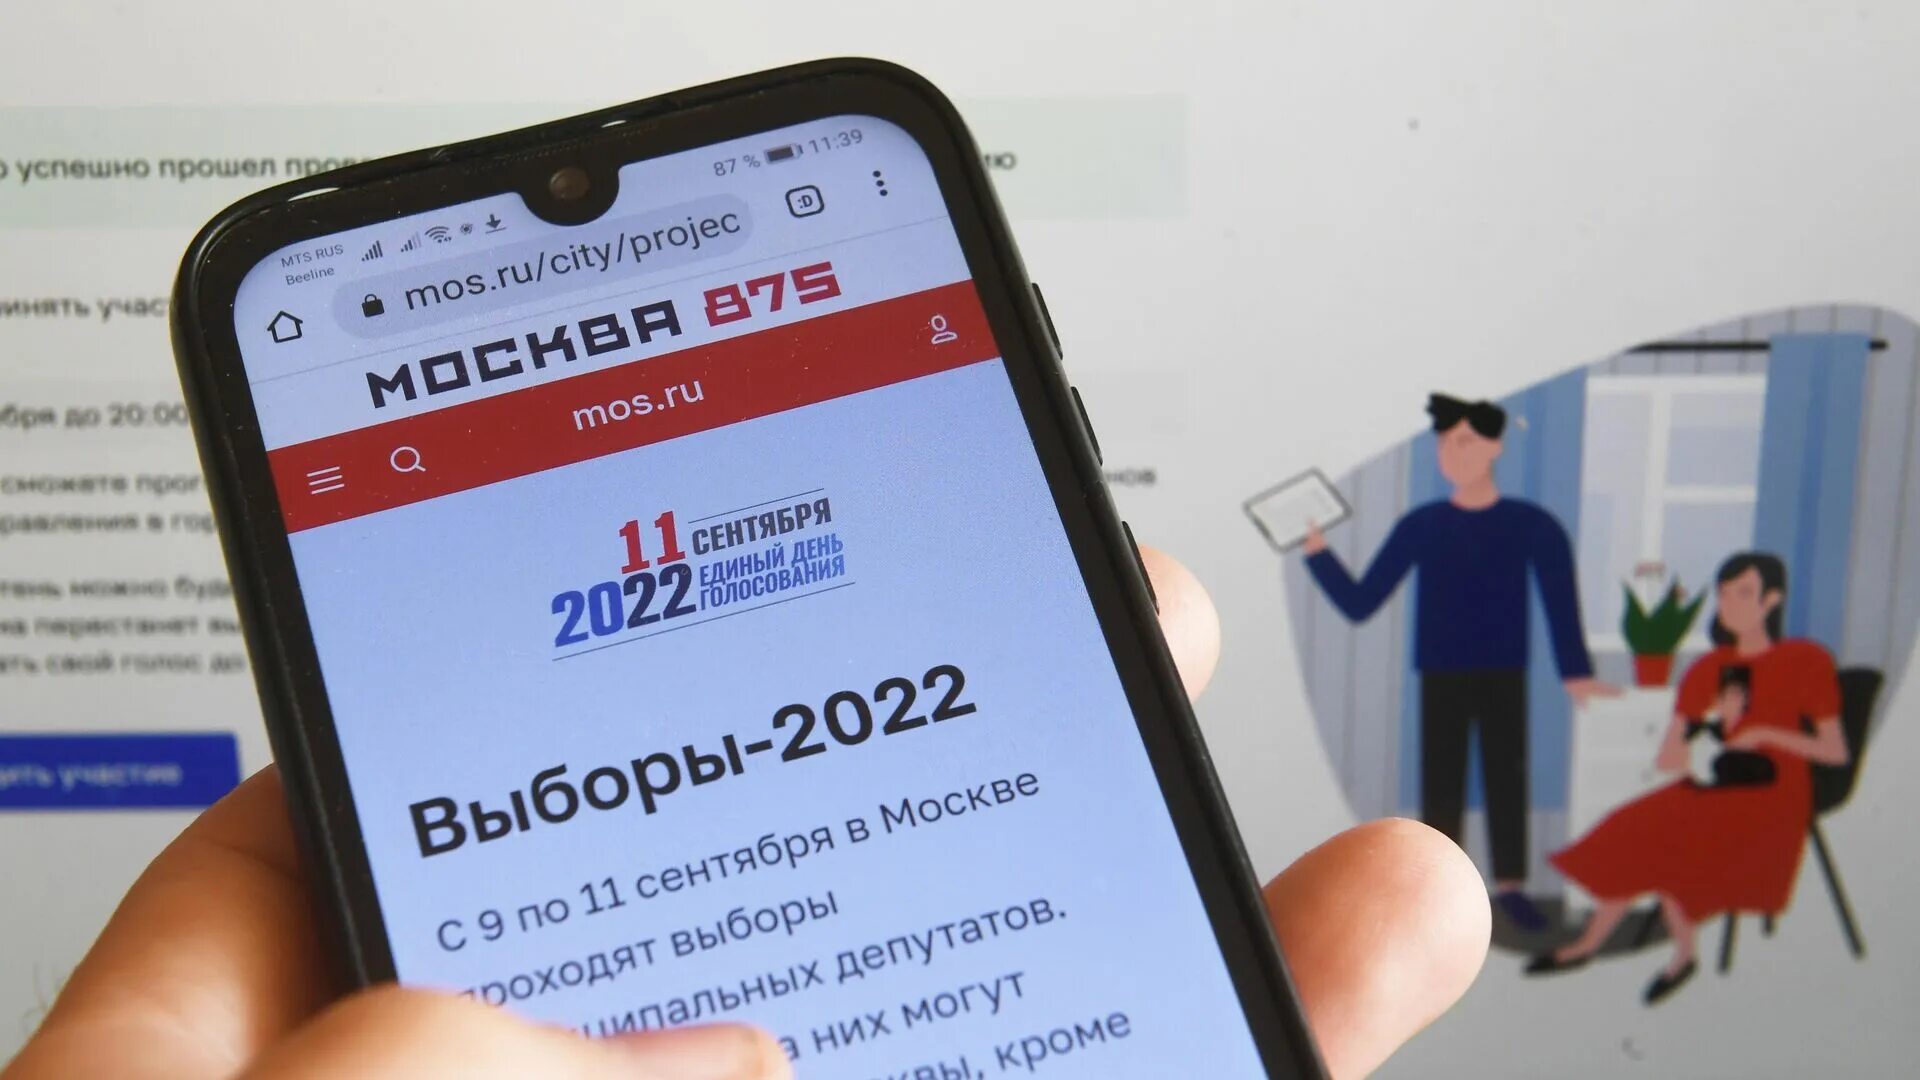 Можно голосовать на мос ру. Электронное голосование. Выборы 2022 в Москве. Дистанционное электронное голосование 2022. Электронное голосование на выборах.